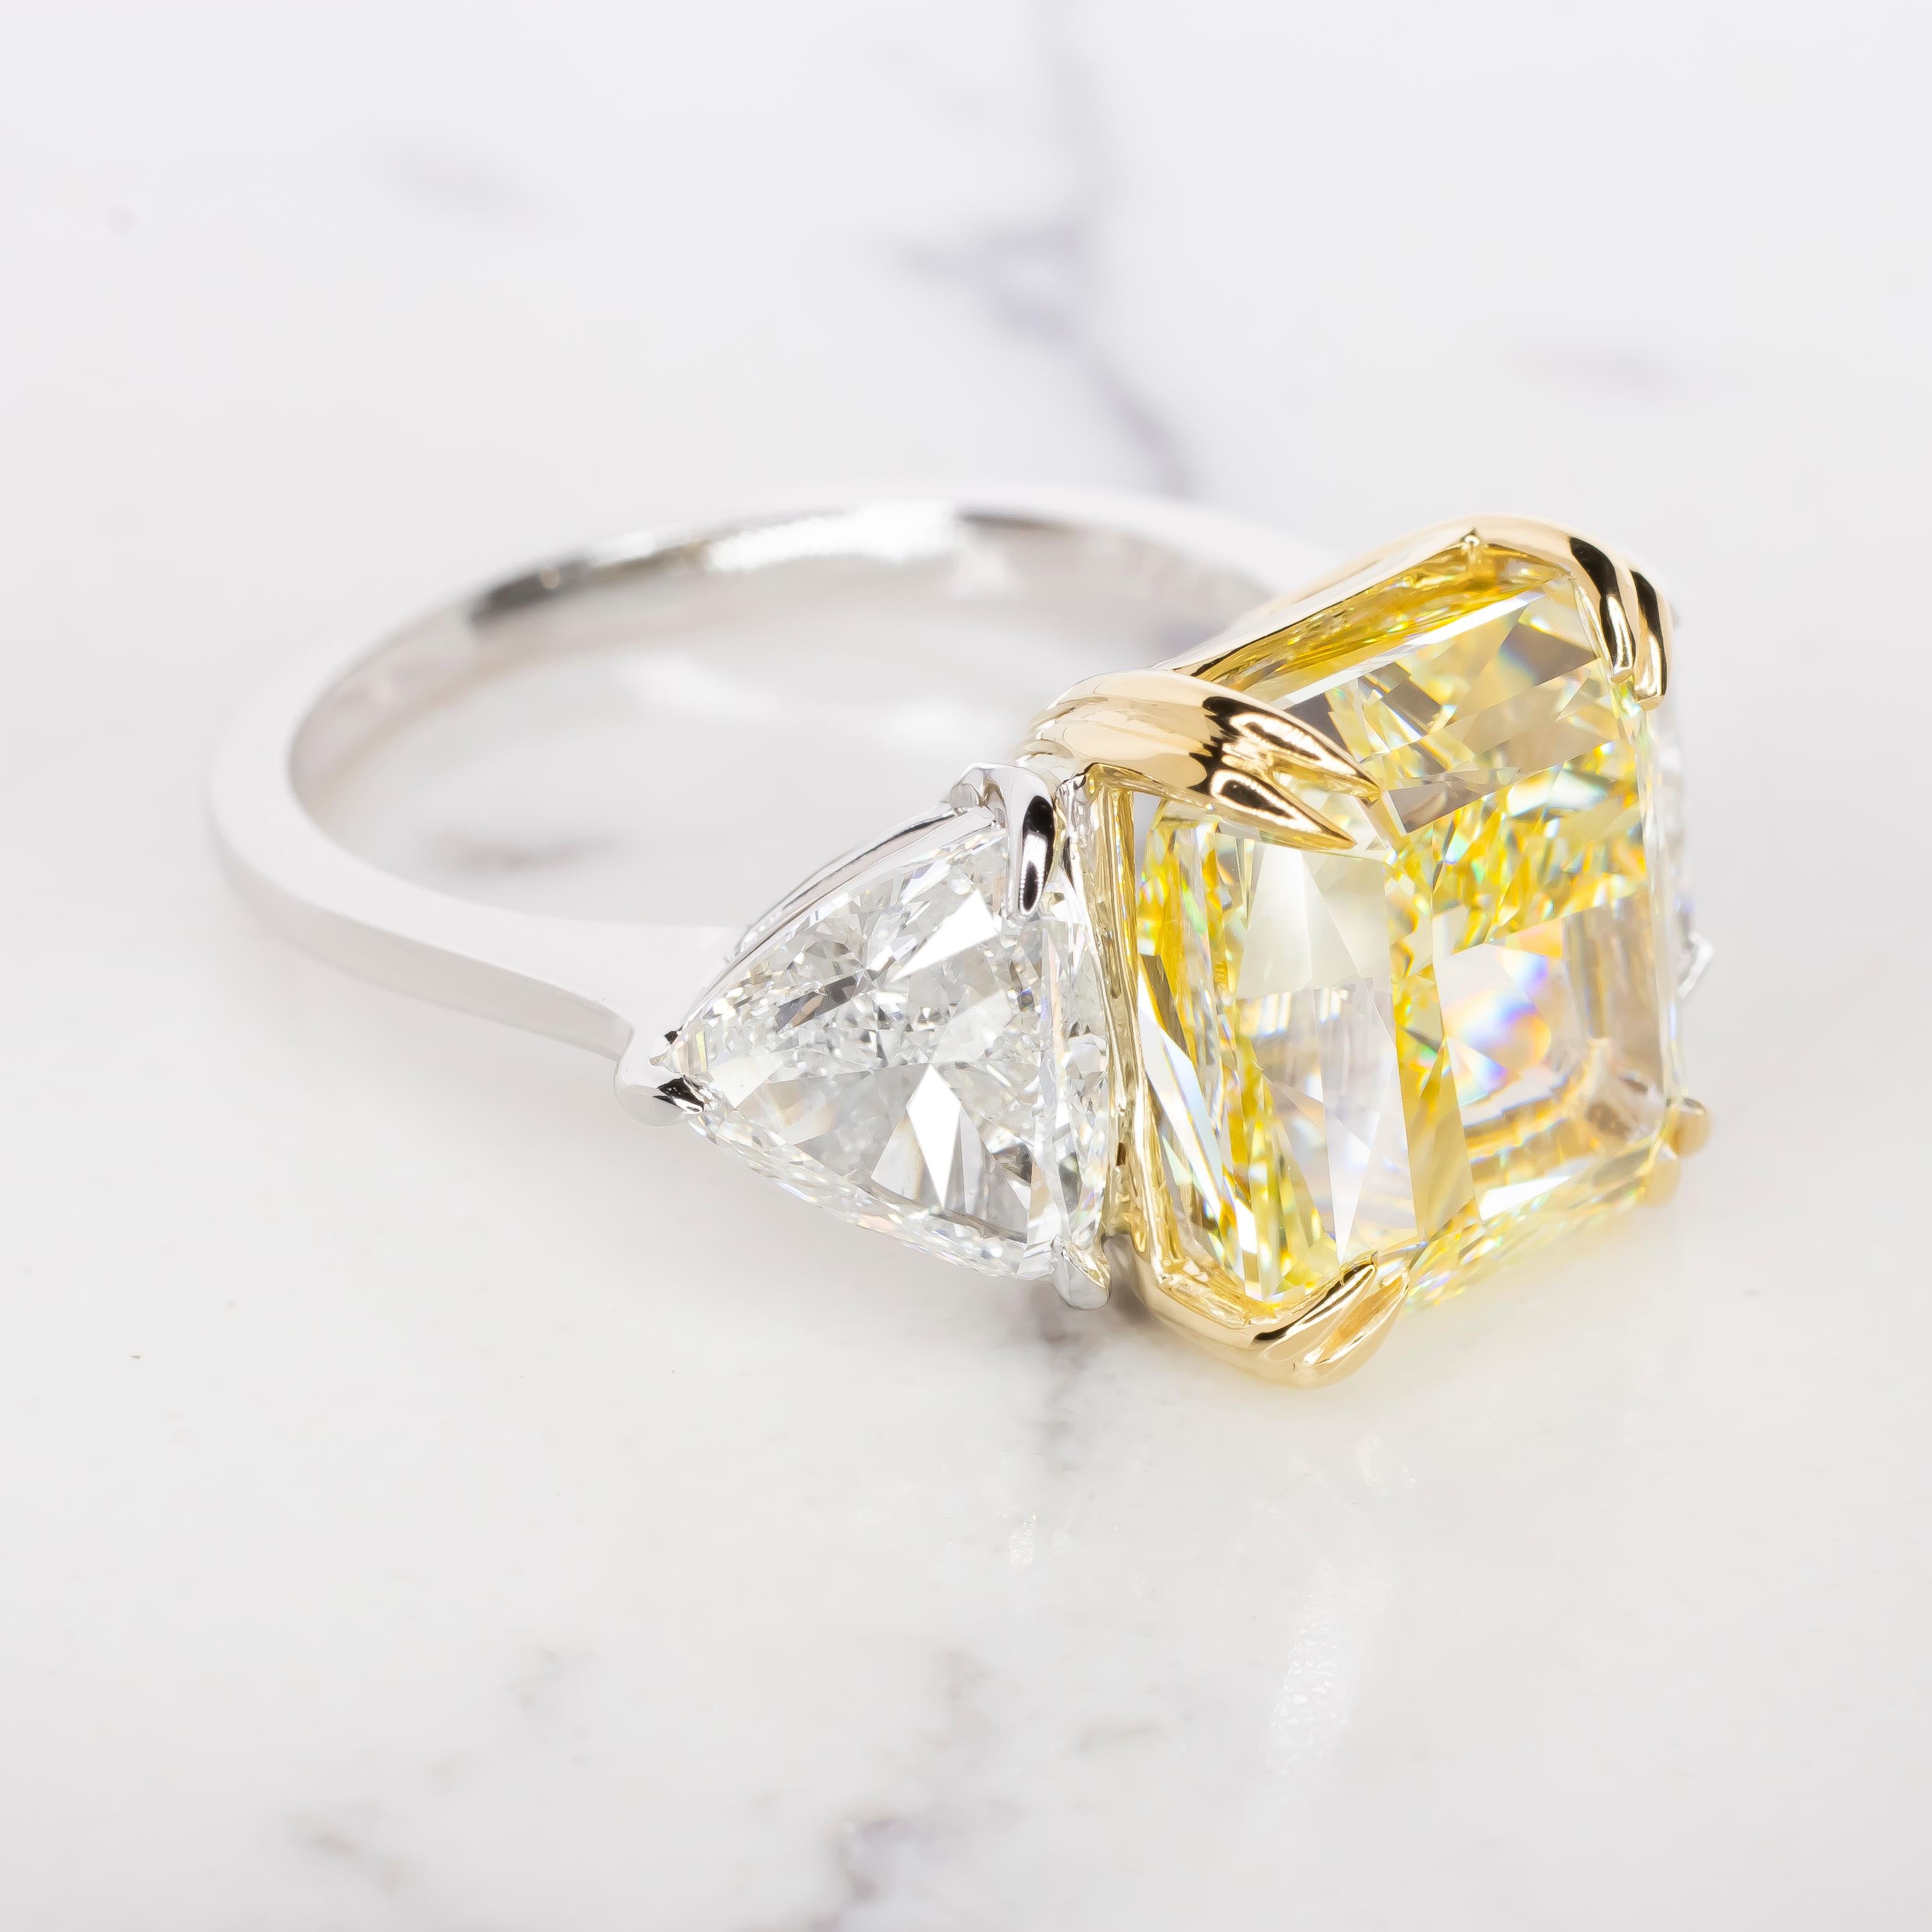 Rayonnez d'une élégance et d'une sophistication inégalées avec cette bague certifiée GIA de 12 ct de diamant jaune fantaisie, accentuée par des diamants taillés en trillion. Au cœur de cette bague exceptionnelle brille un captivant diamant jaune